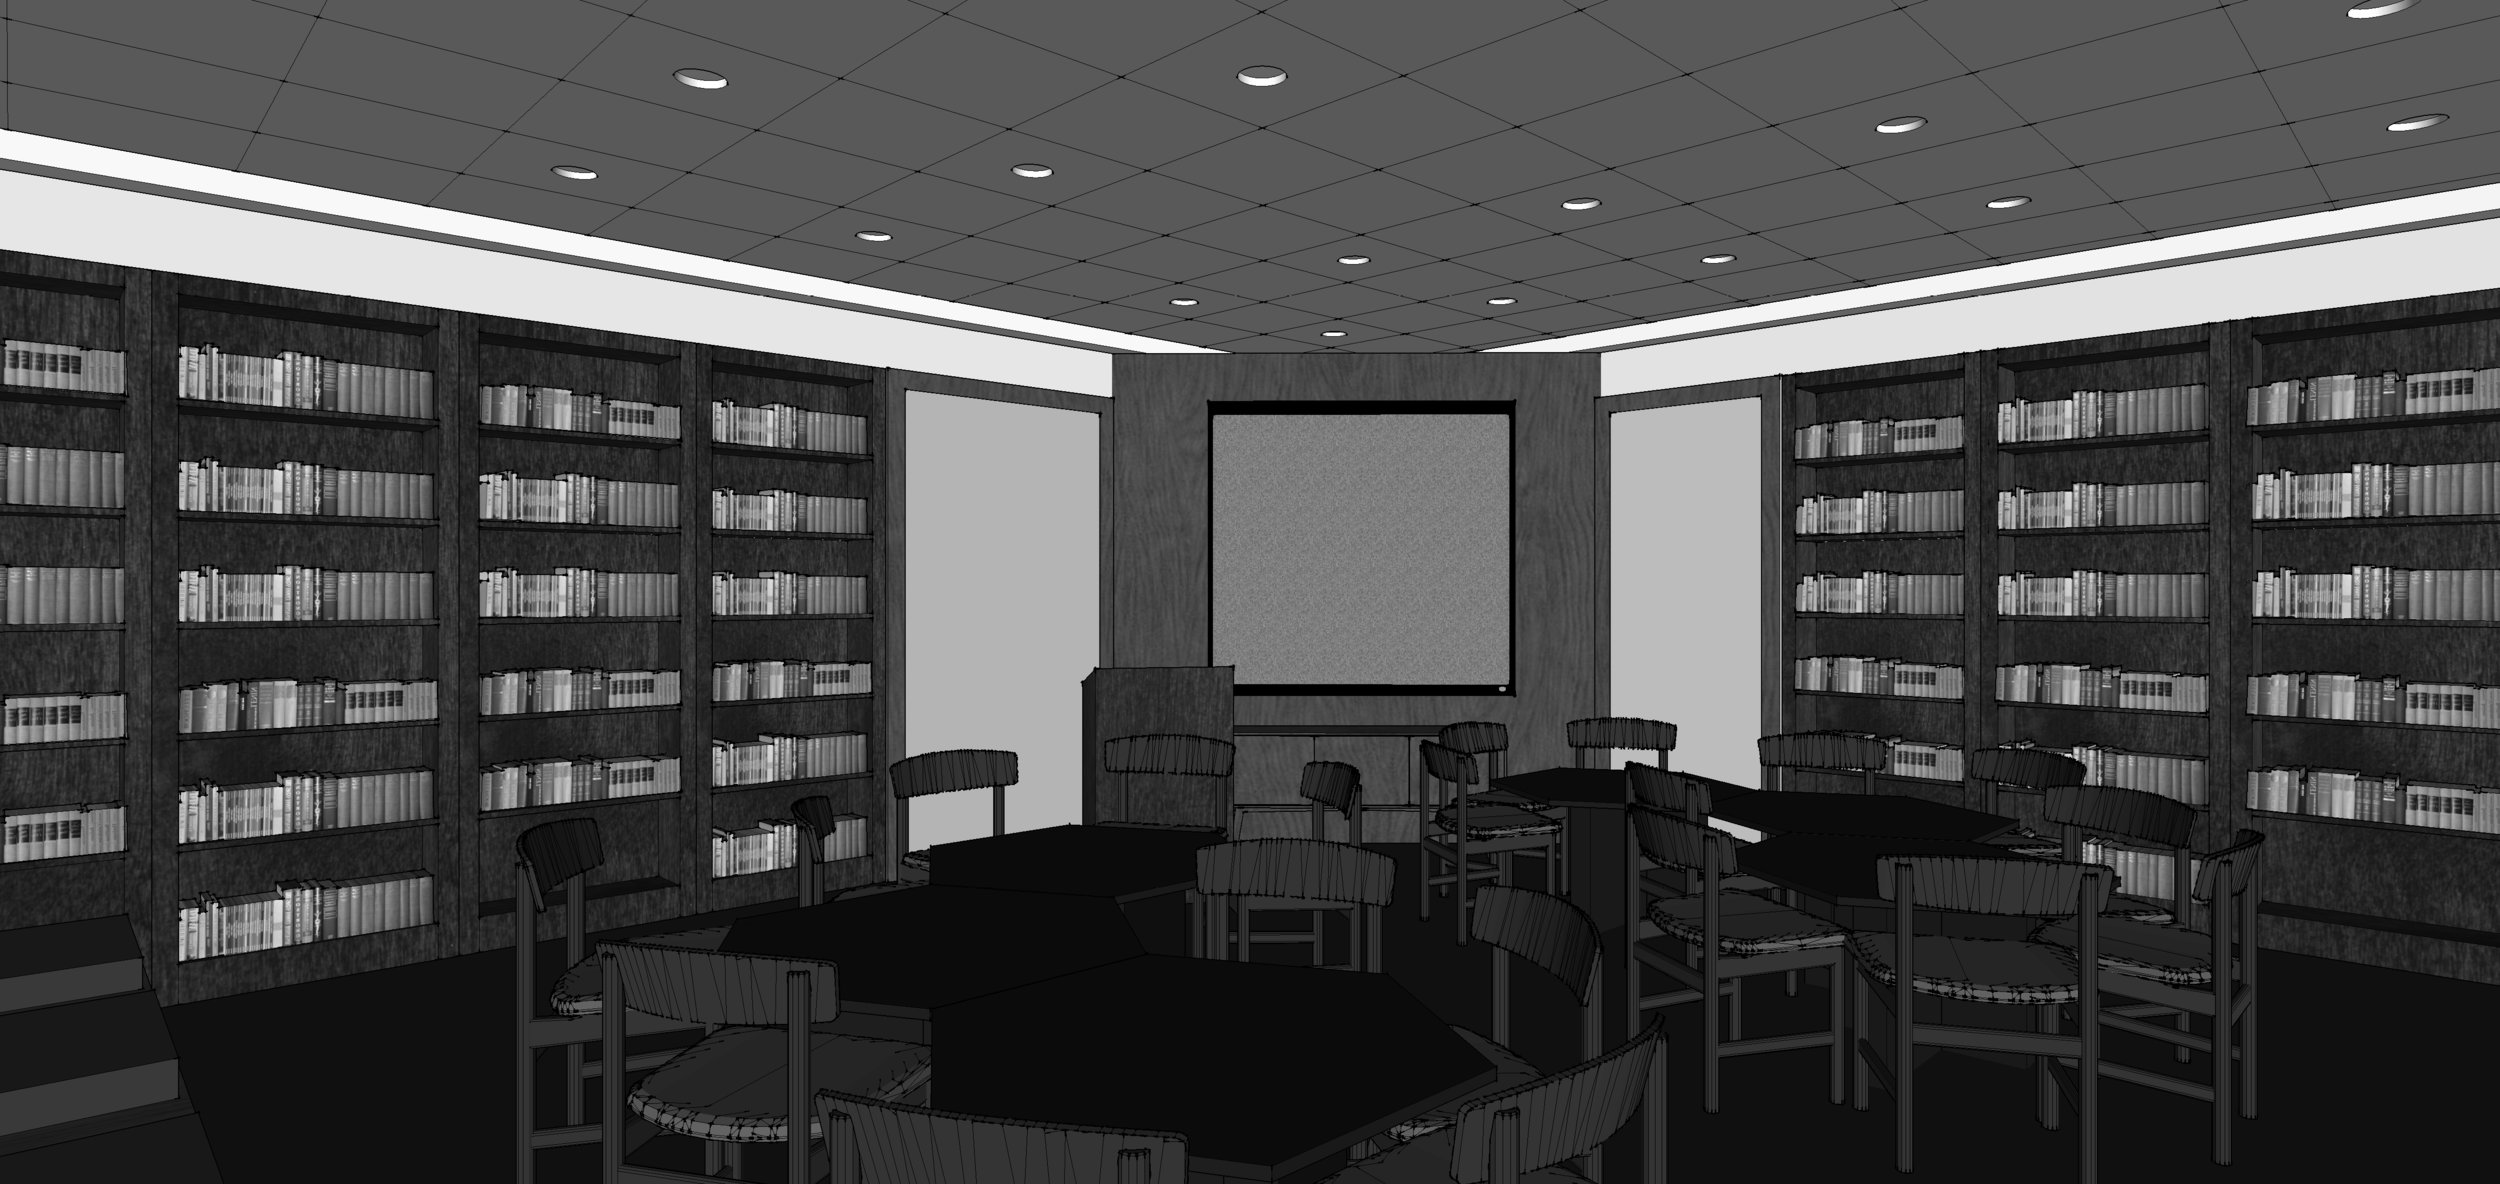 UGA School of Law_Sketchup_Bookshelves_View3.jpg